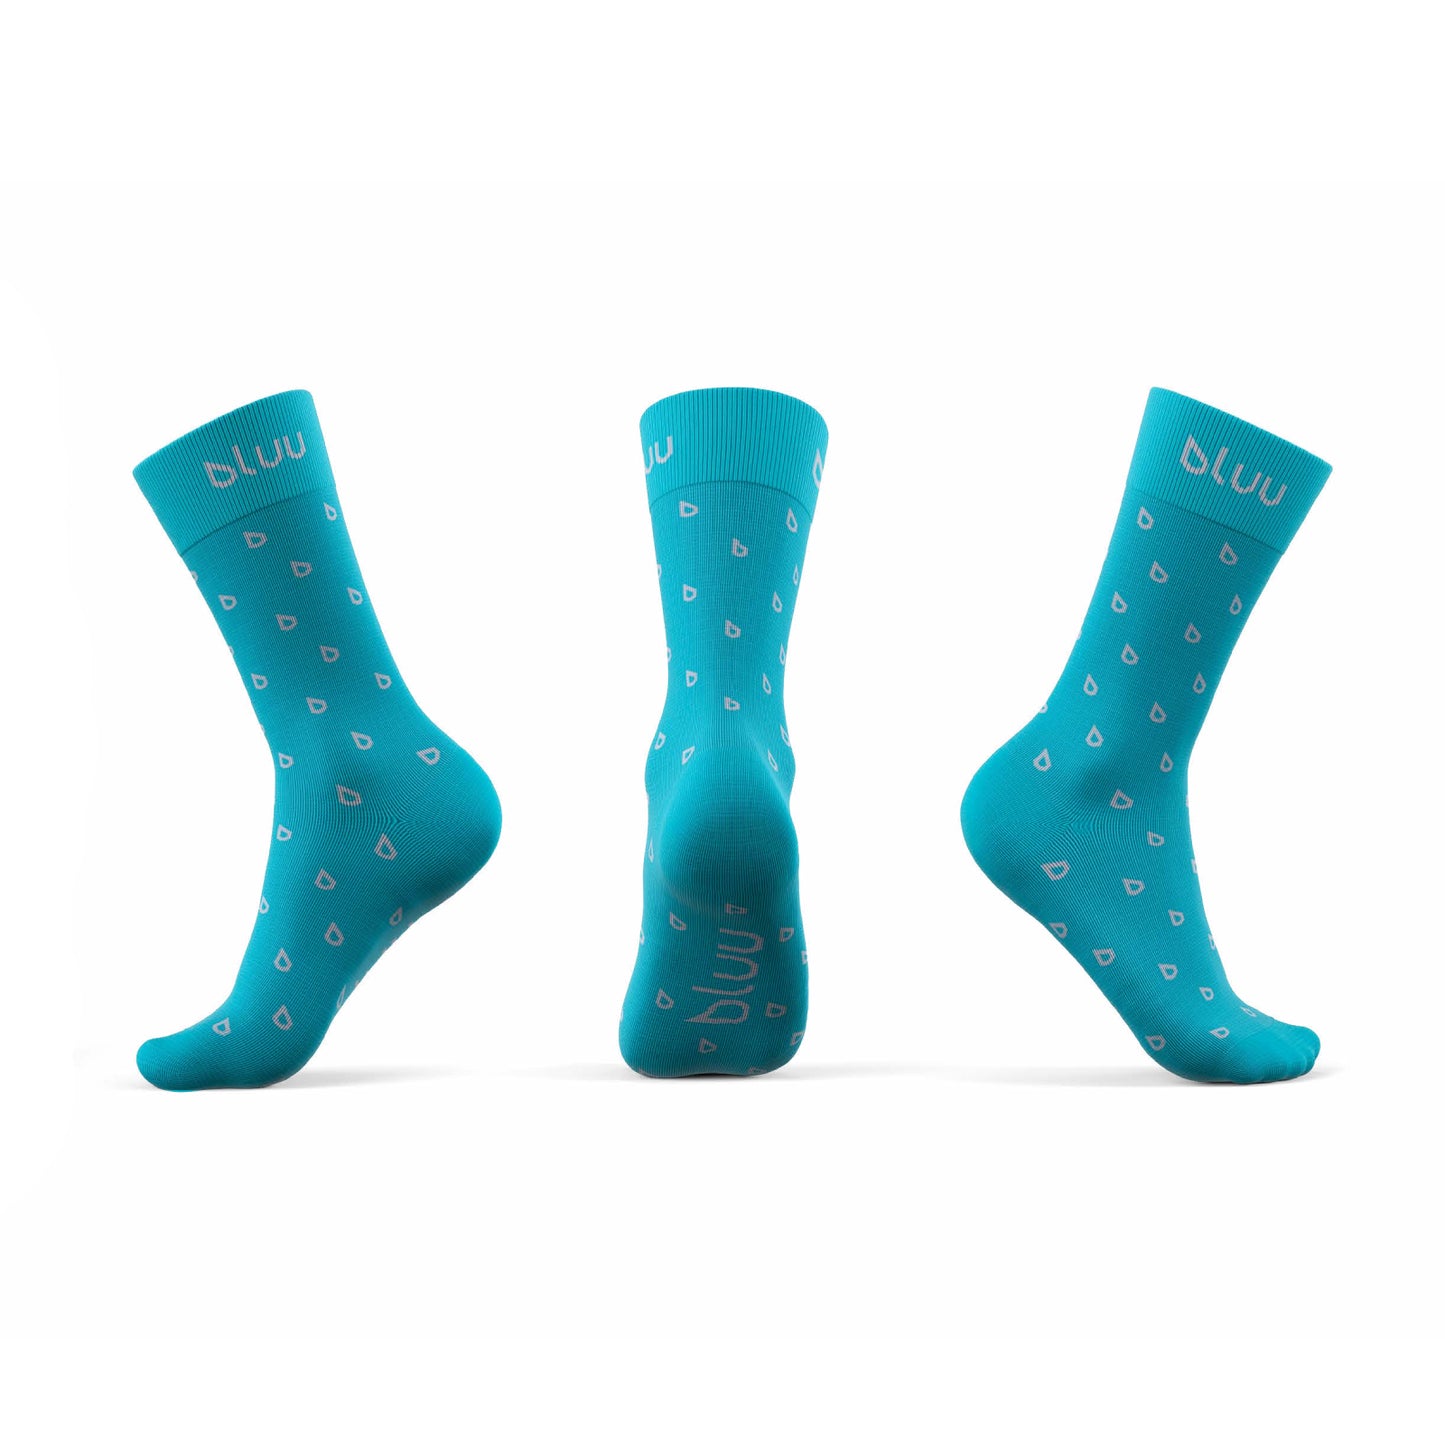 bluu socks